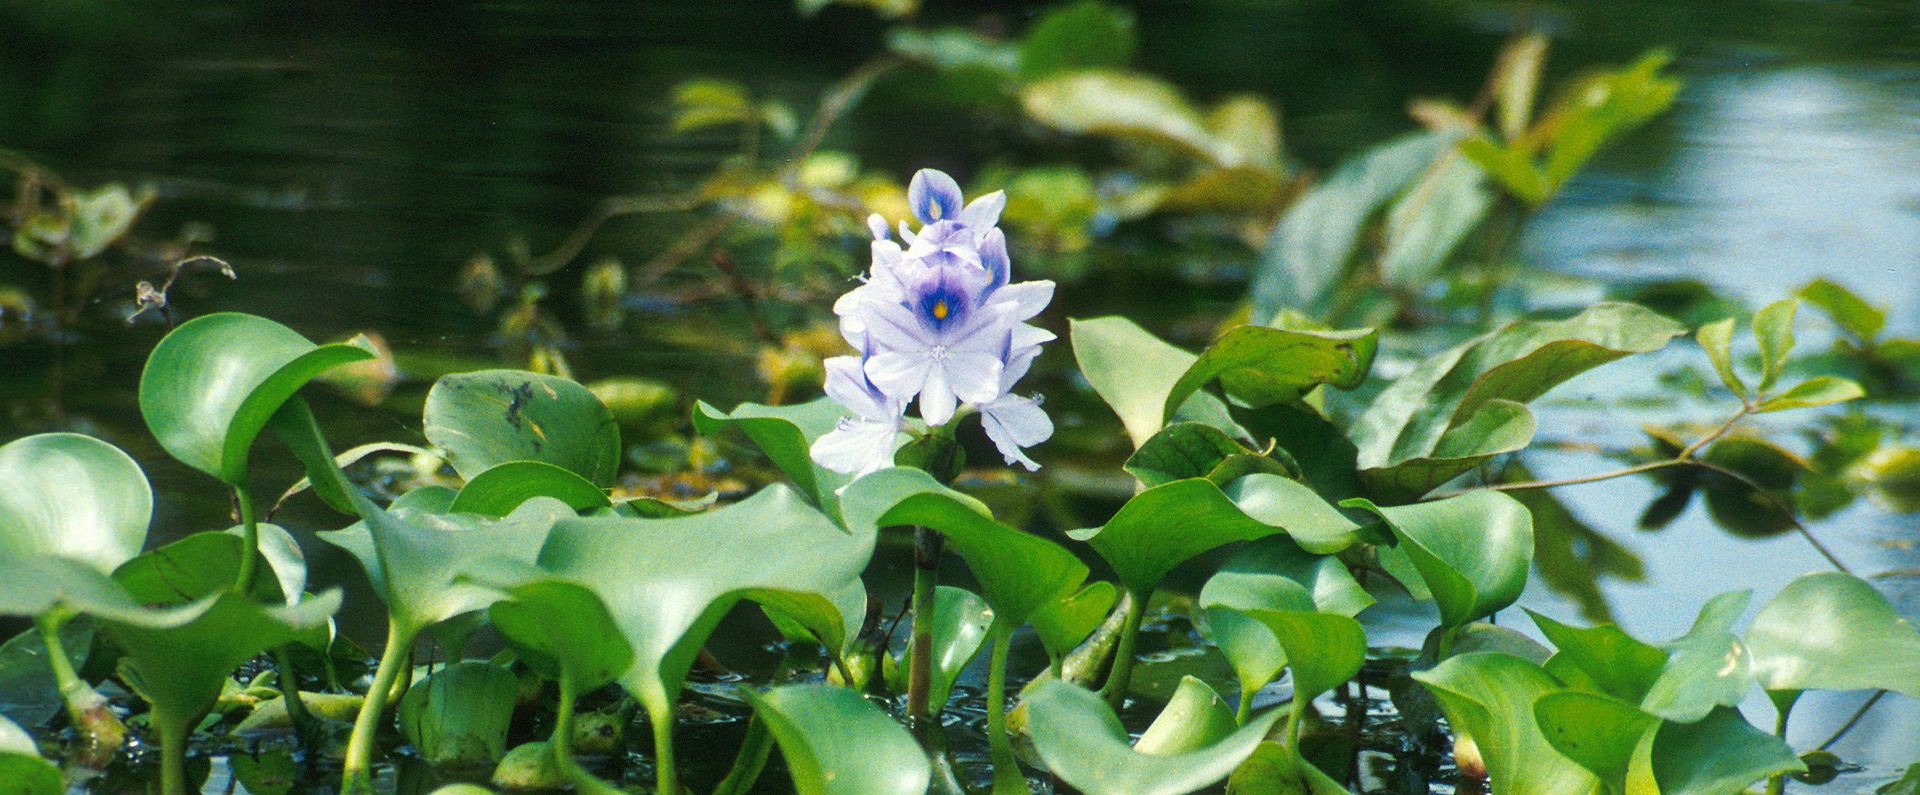 Water-hyacinth in bloom.